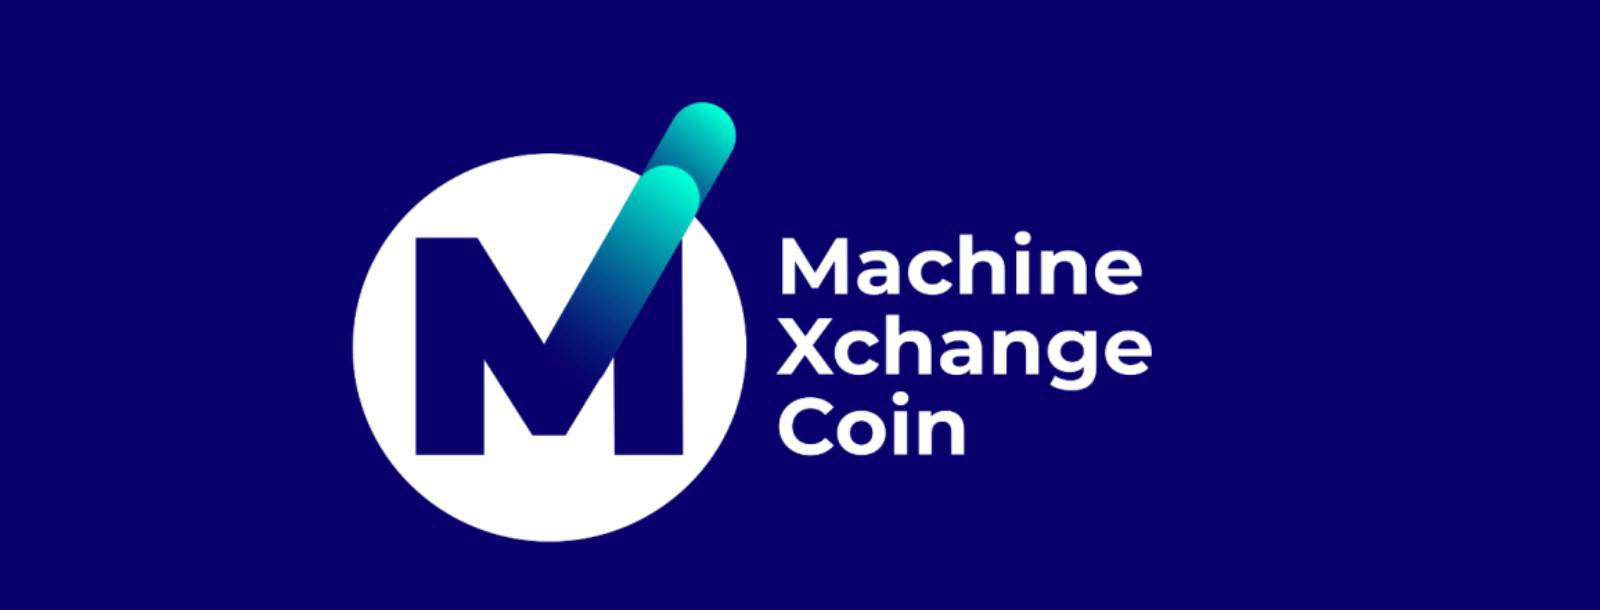 Machine Xchange Coin